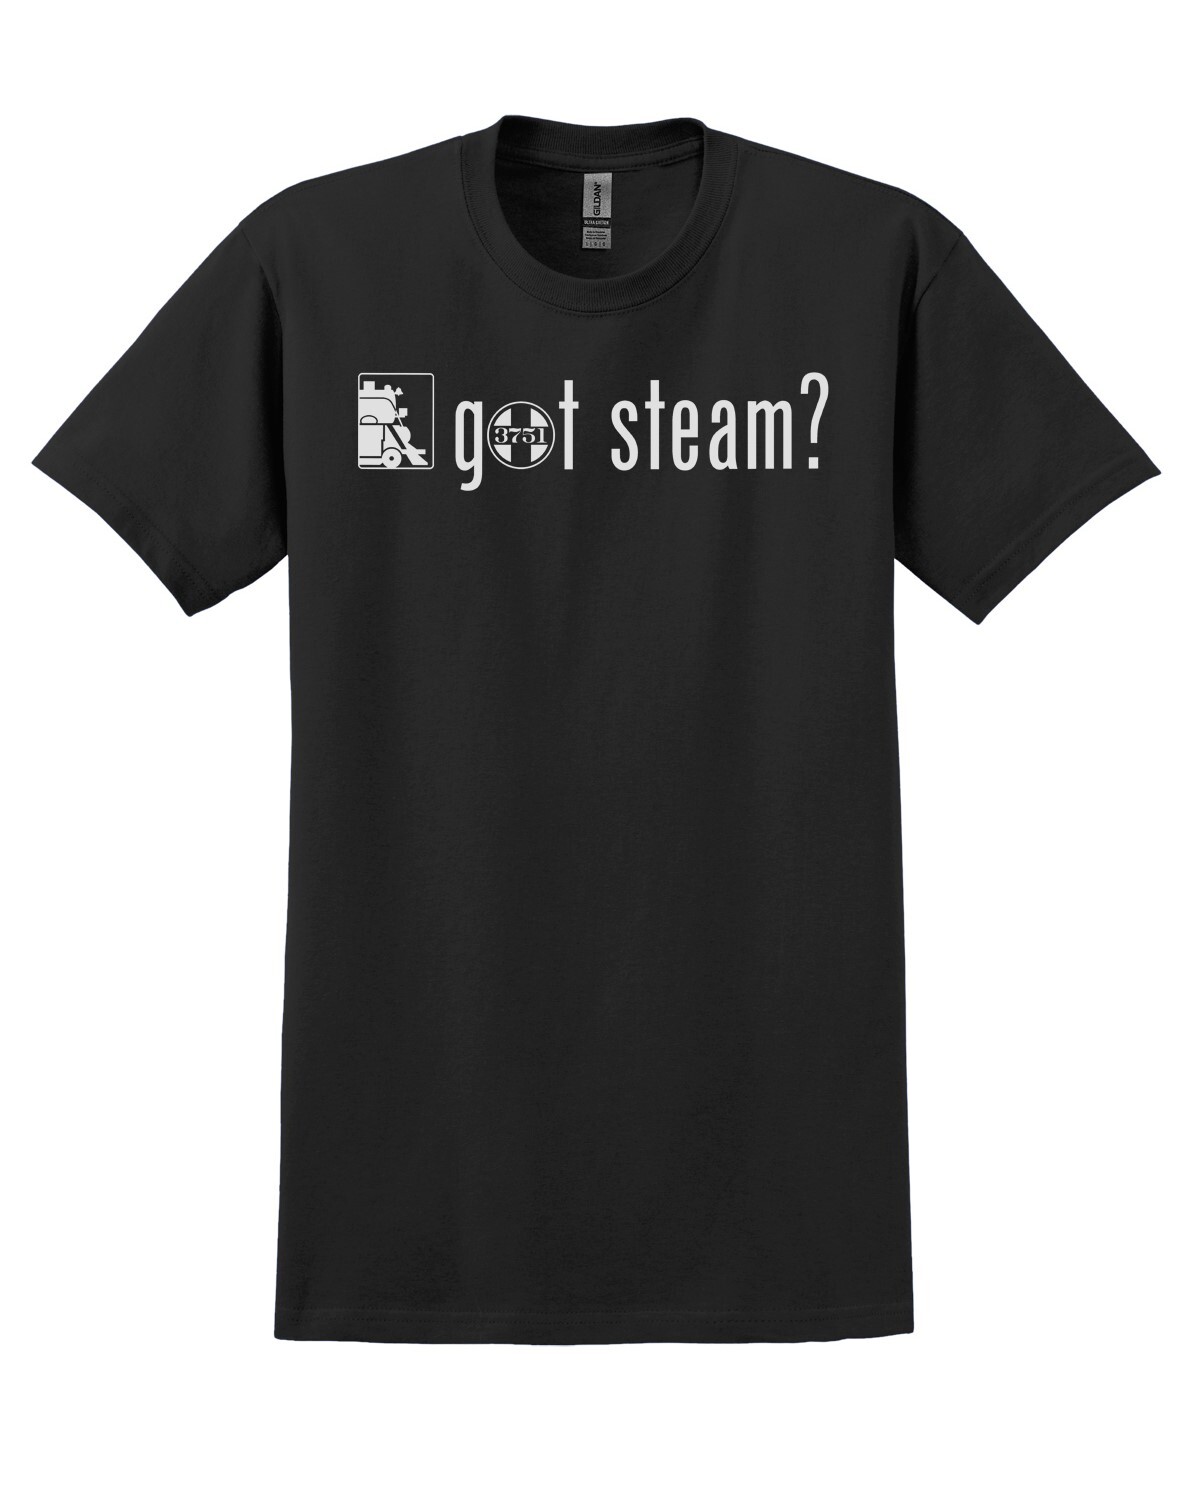 NEW!!! "Got Steam?" - (Black) - XXXL